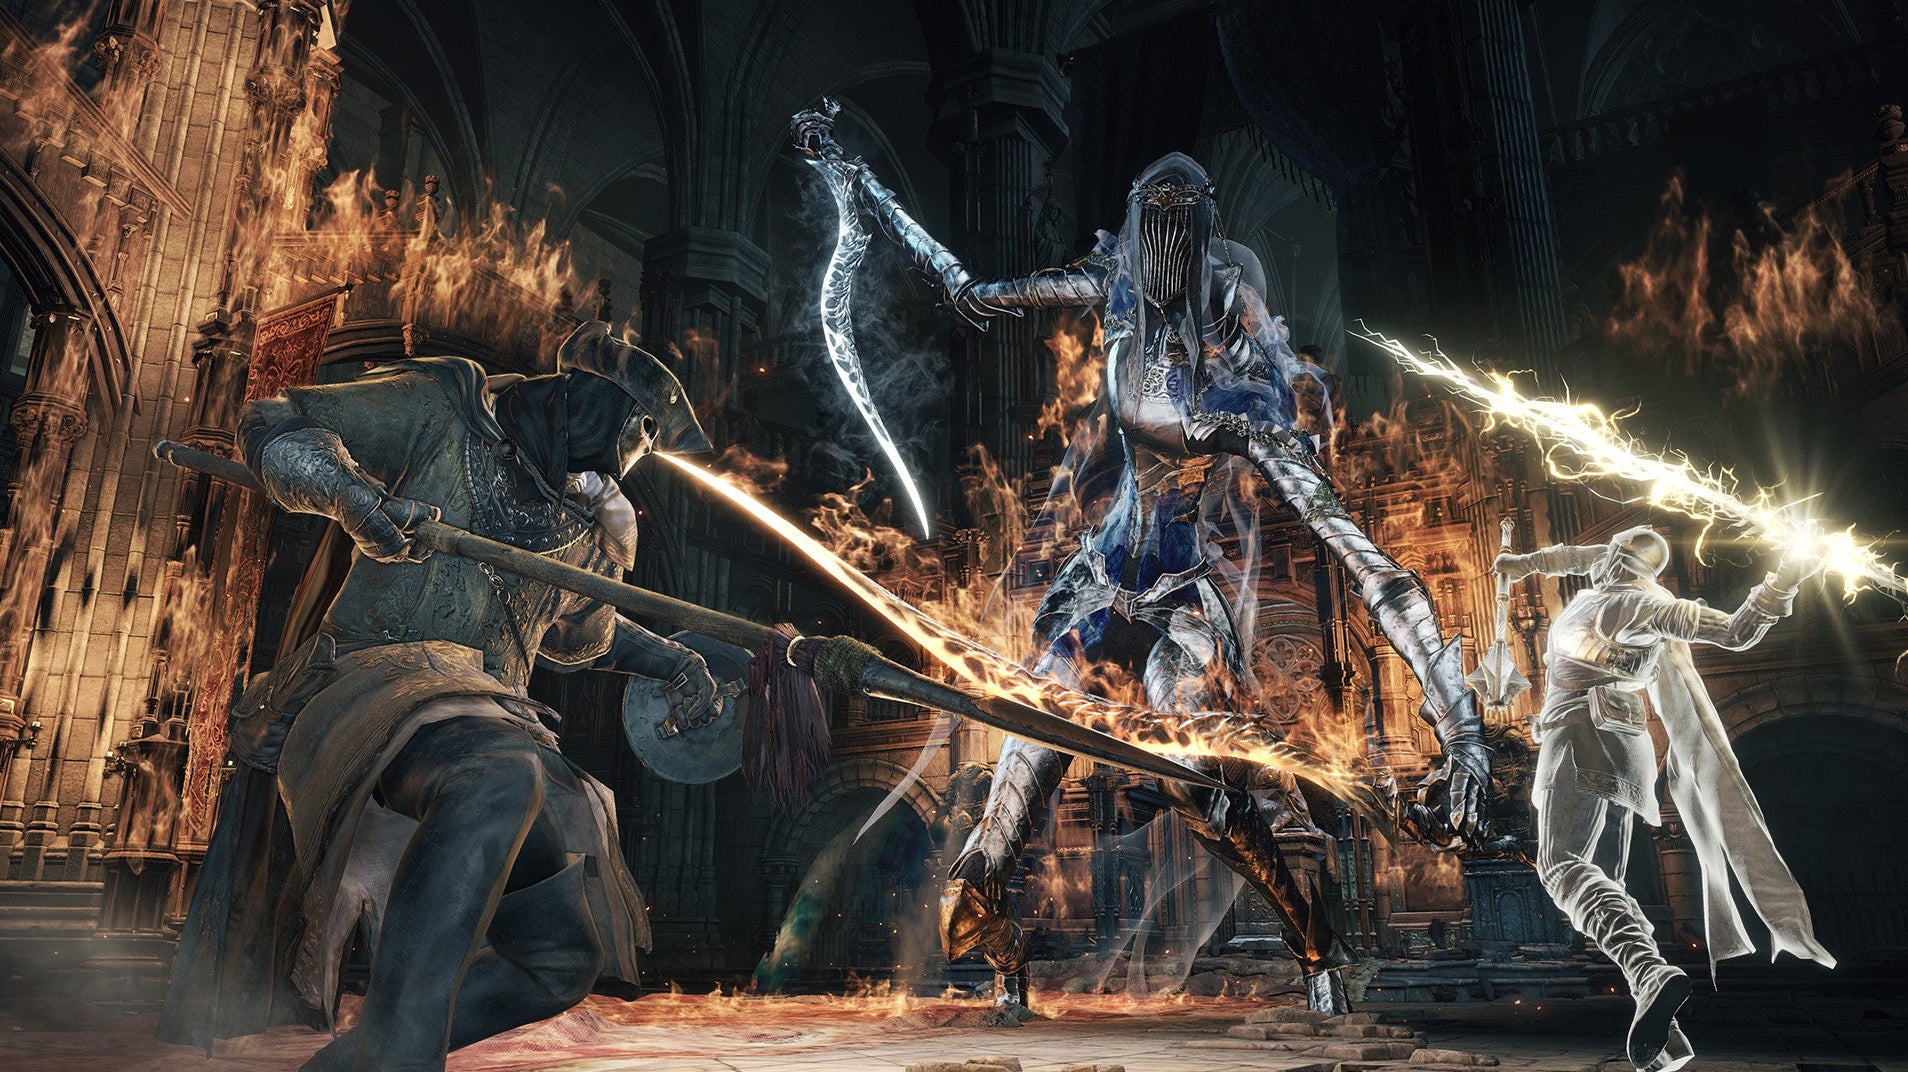 Immagine di Dark Souls su PC chiude temporaneamente i server a causa di un grave exploit